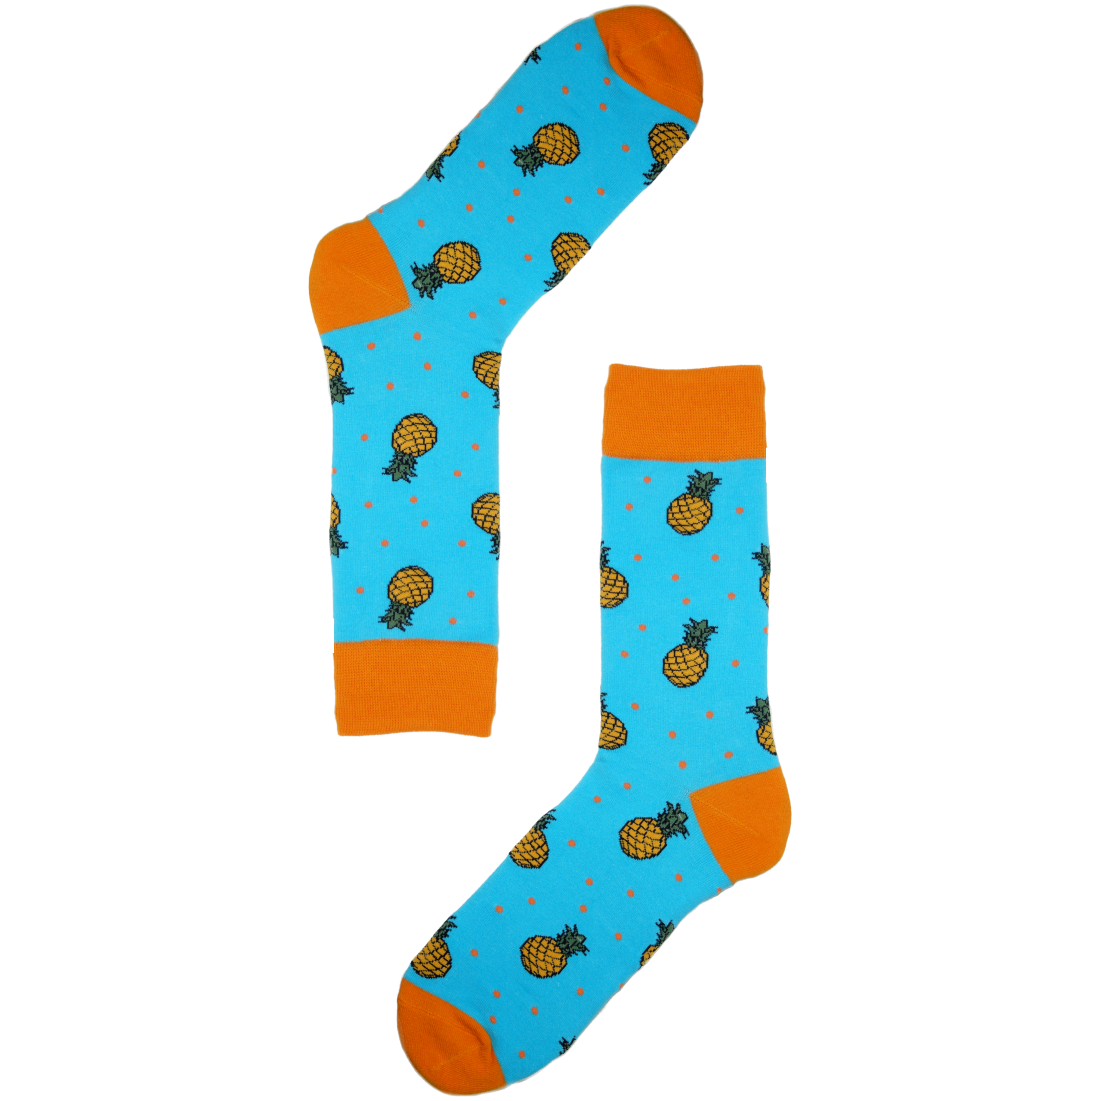 Medias Locas calcetines divertidos de diseño de piñas Freaky Socks. Medias Piñas